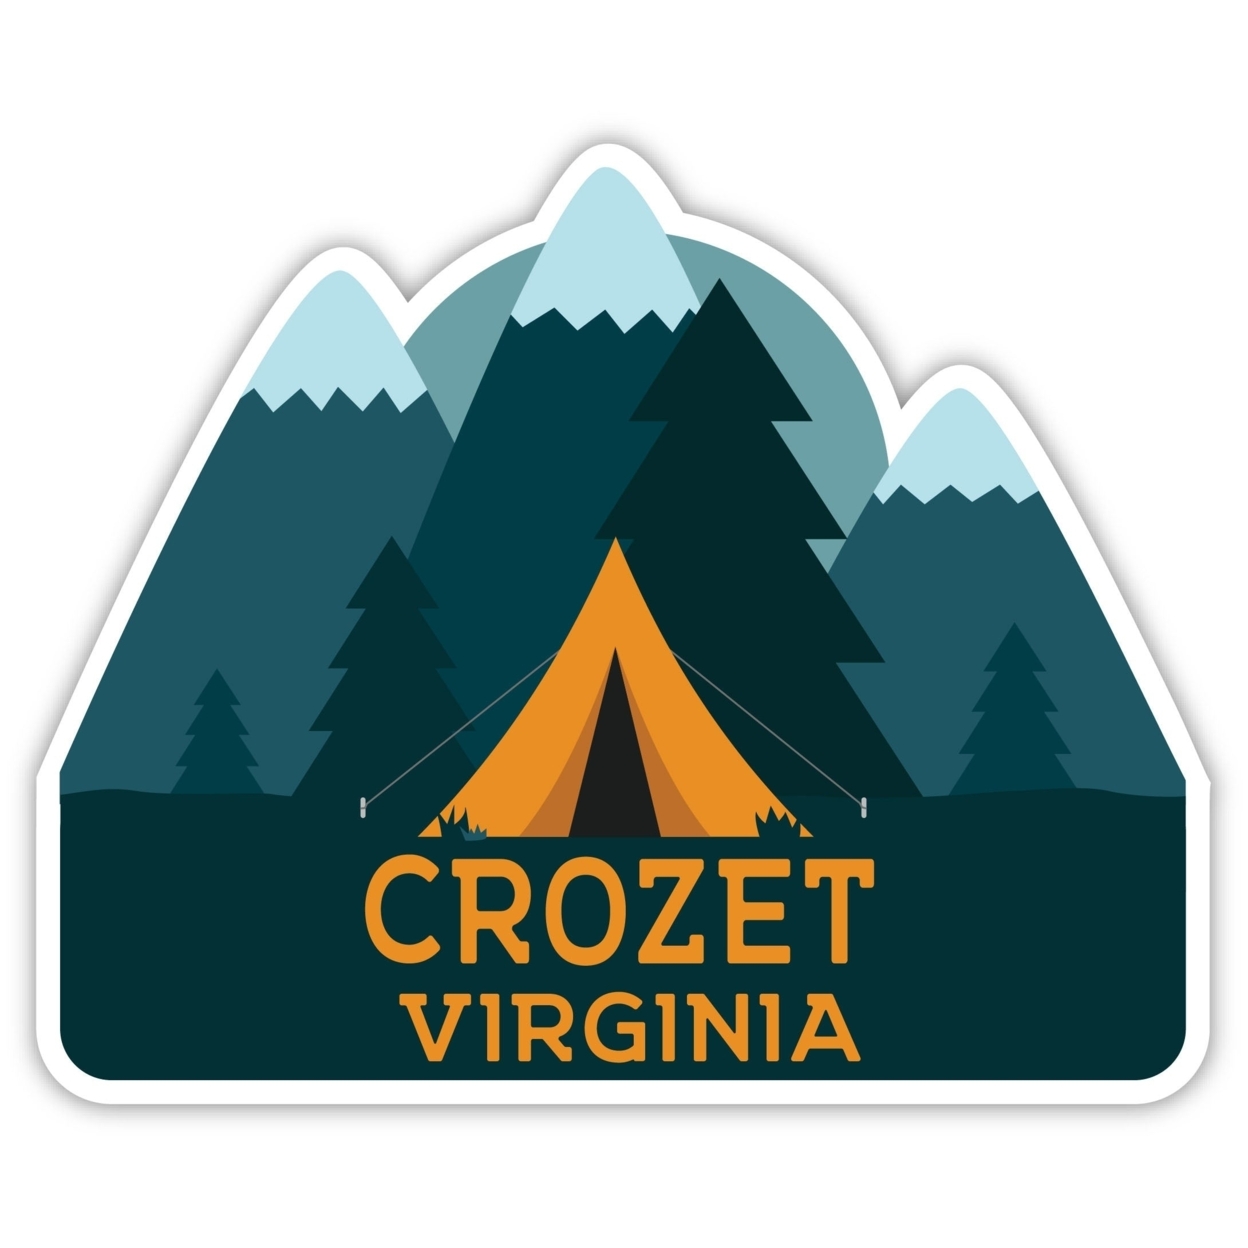 Crozet Virginia Souvenir Decorative Stickers (Choose Theme And Size) - Single Unit, 6-Inch, Tent